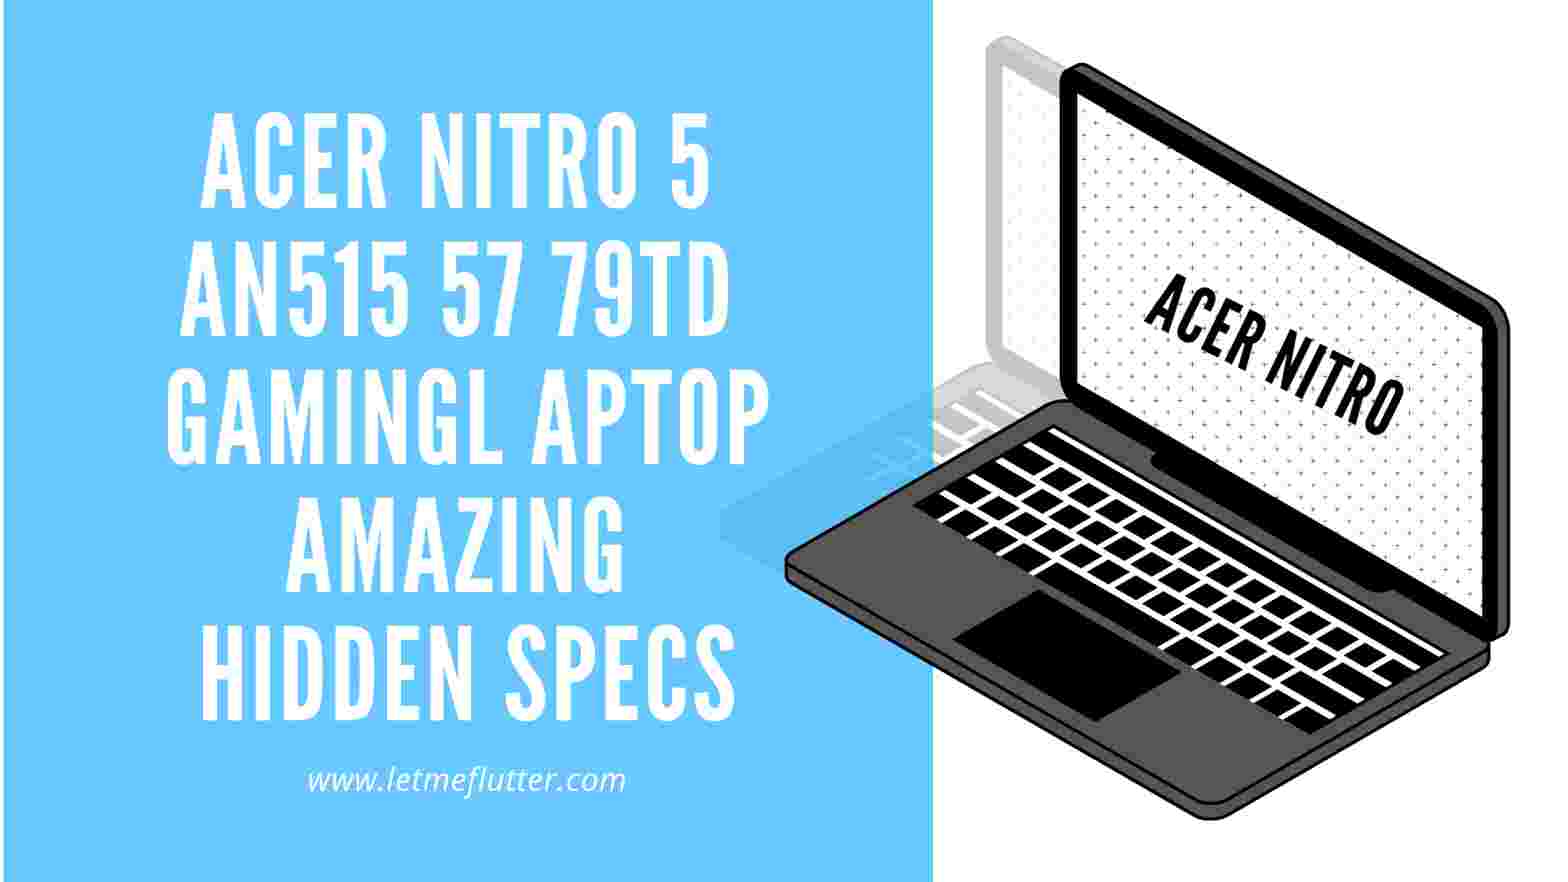 Acer Nitro 5 AN515 57 79TD Gaming Laptop